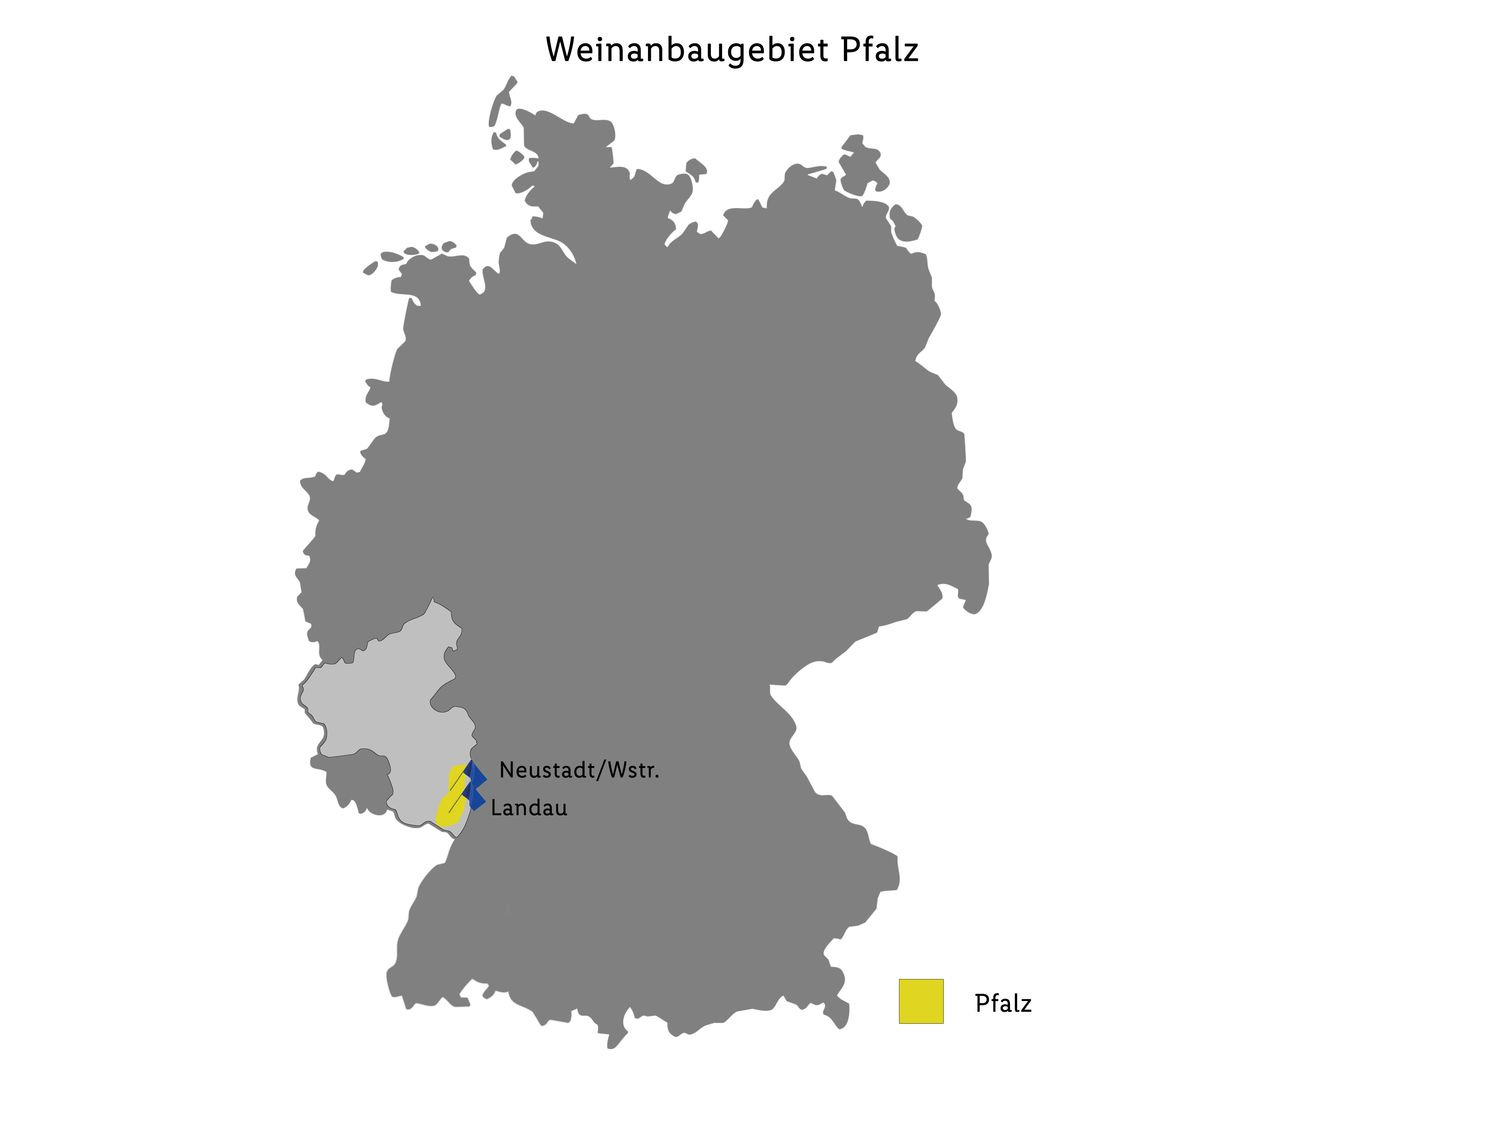 Deutsches Weintor QbA Weißburgunder trocken, Wei… Pfalz